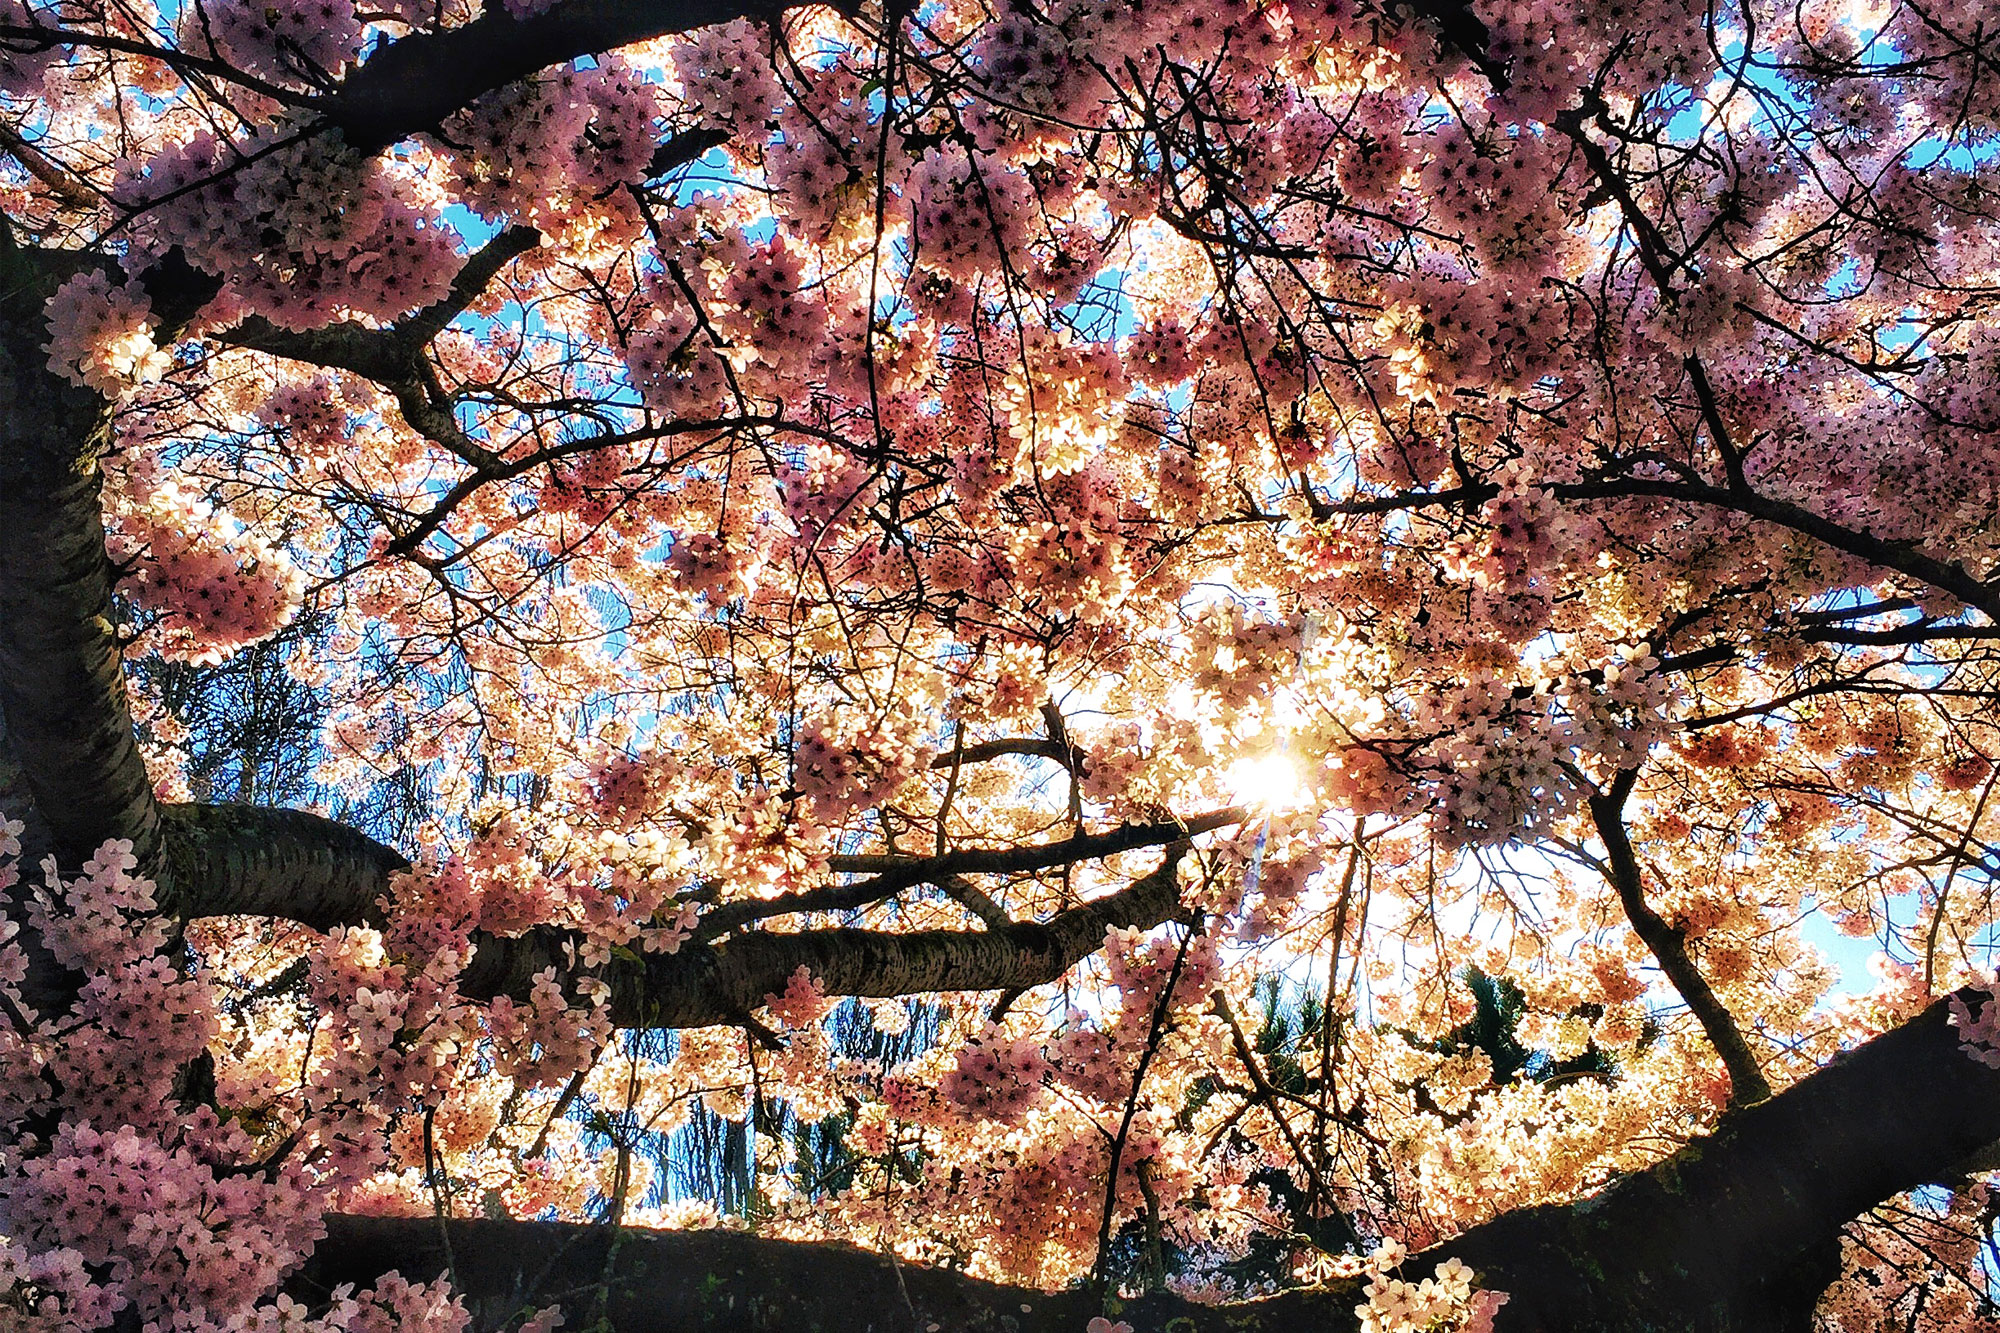 Sunlight dappling through cherry blossoms seen from below